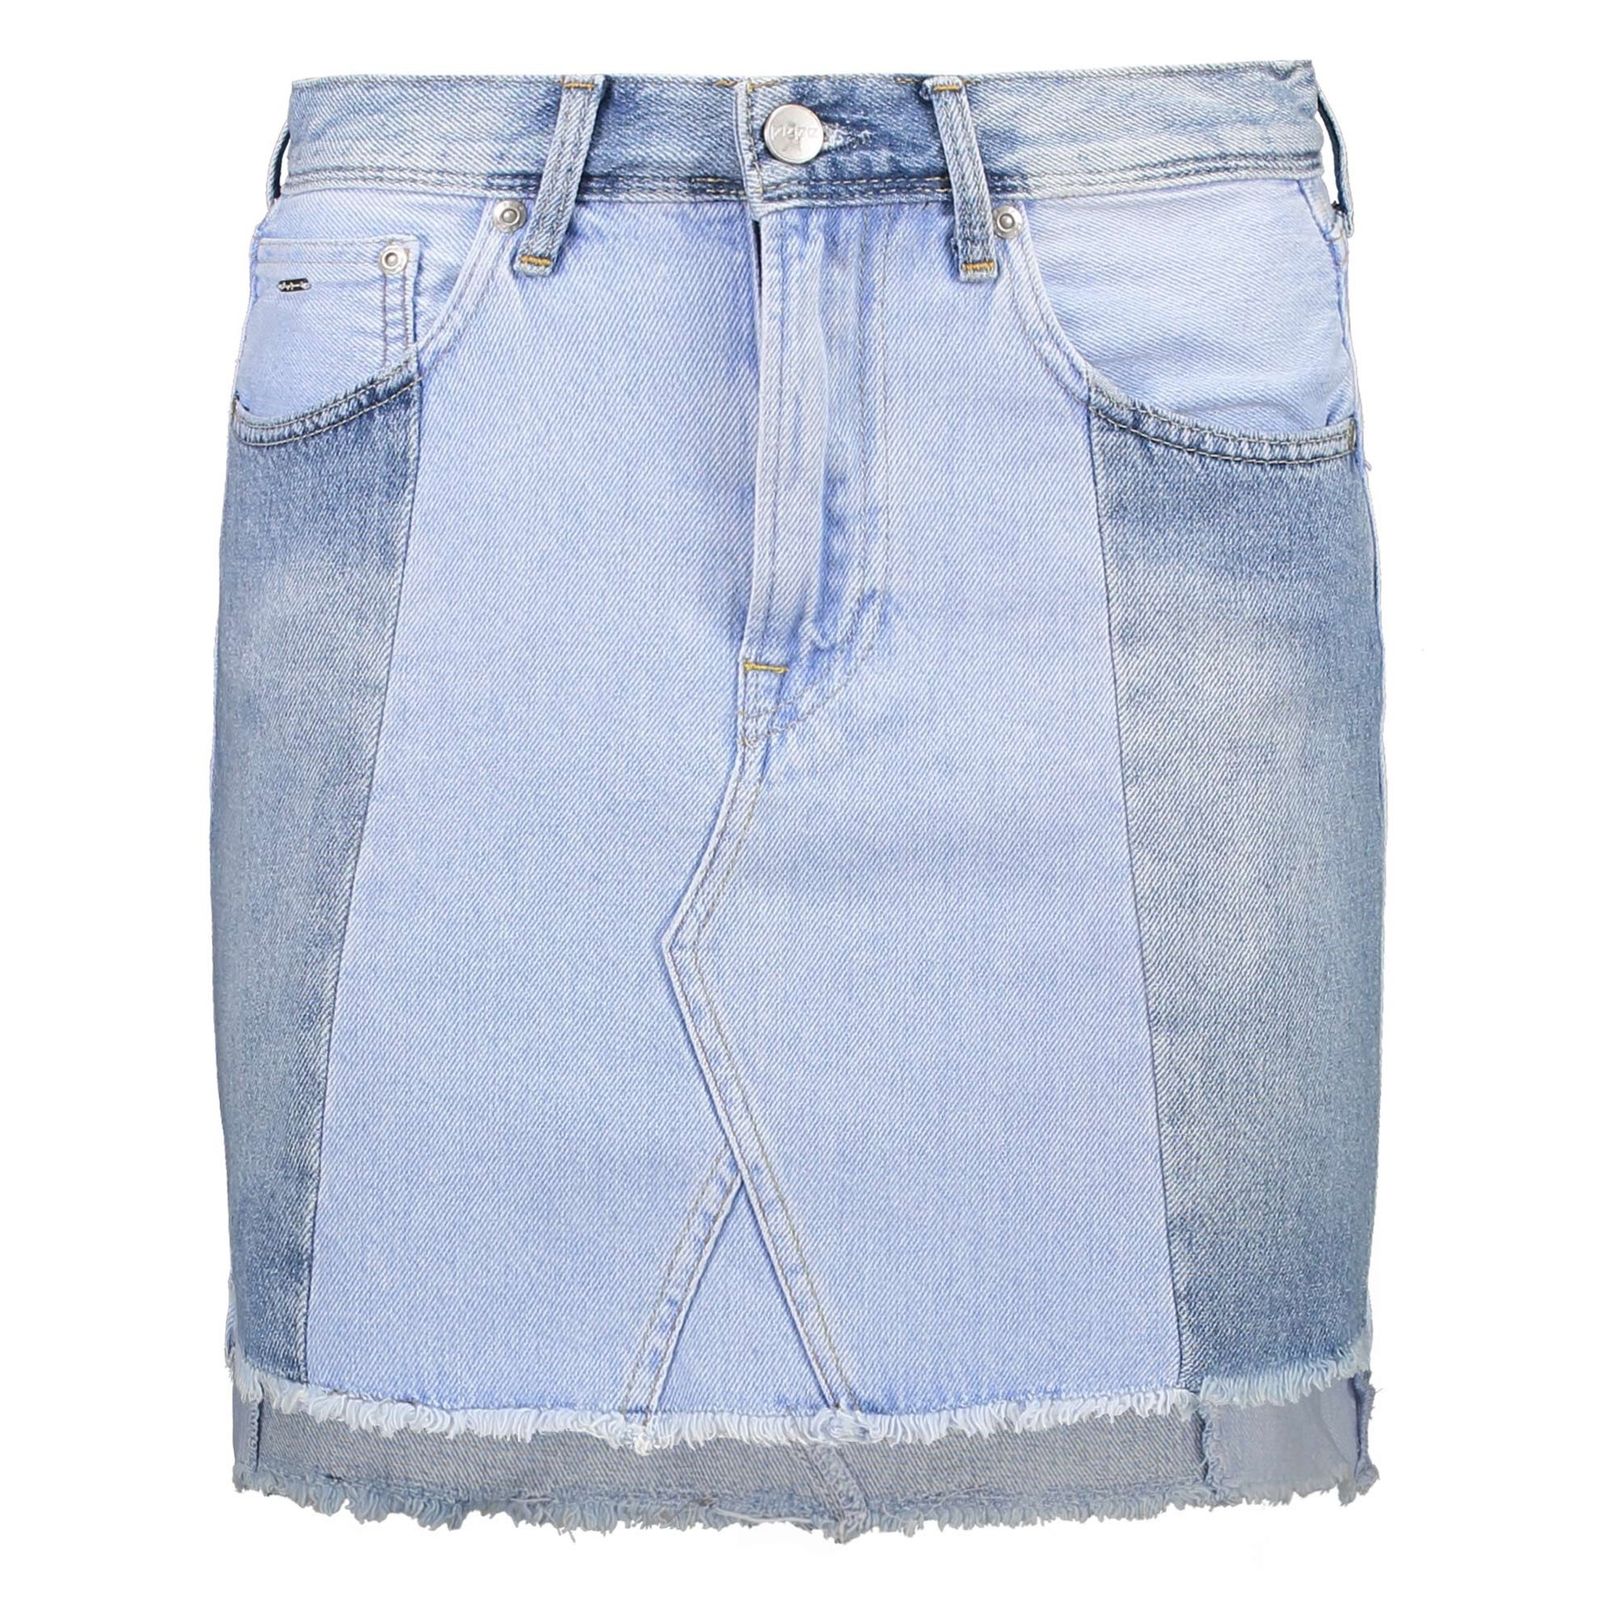 دامن جین کوتاه زنانه Reborn Skirt - پپه جینز - آبي - 1